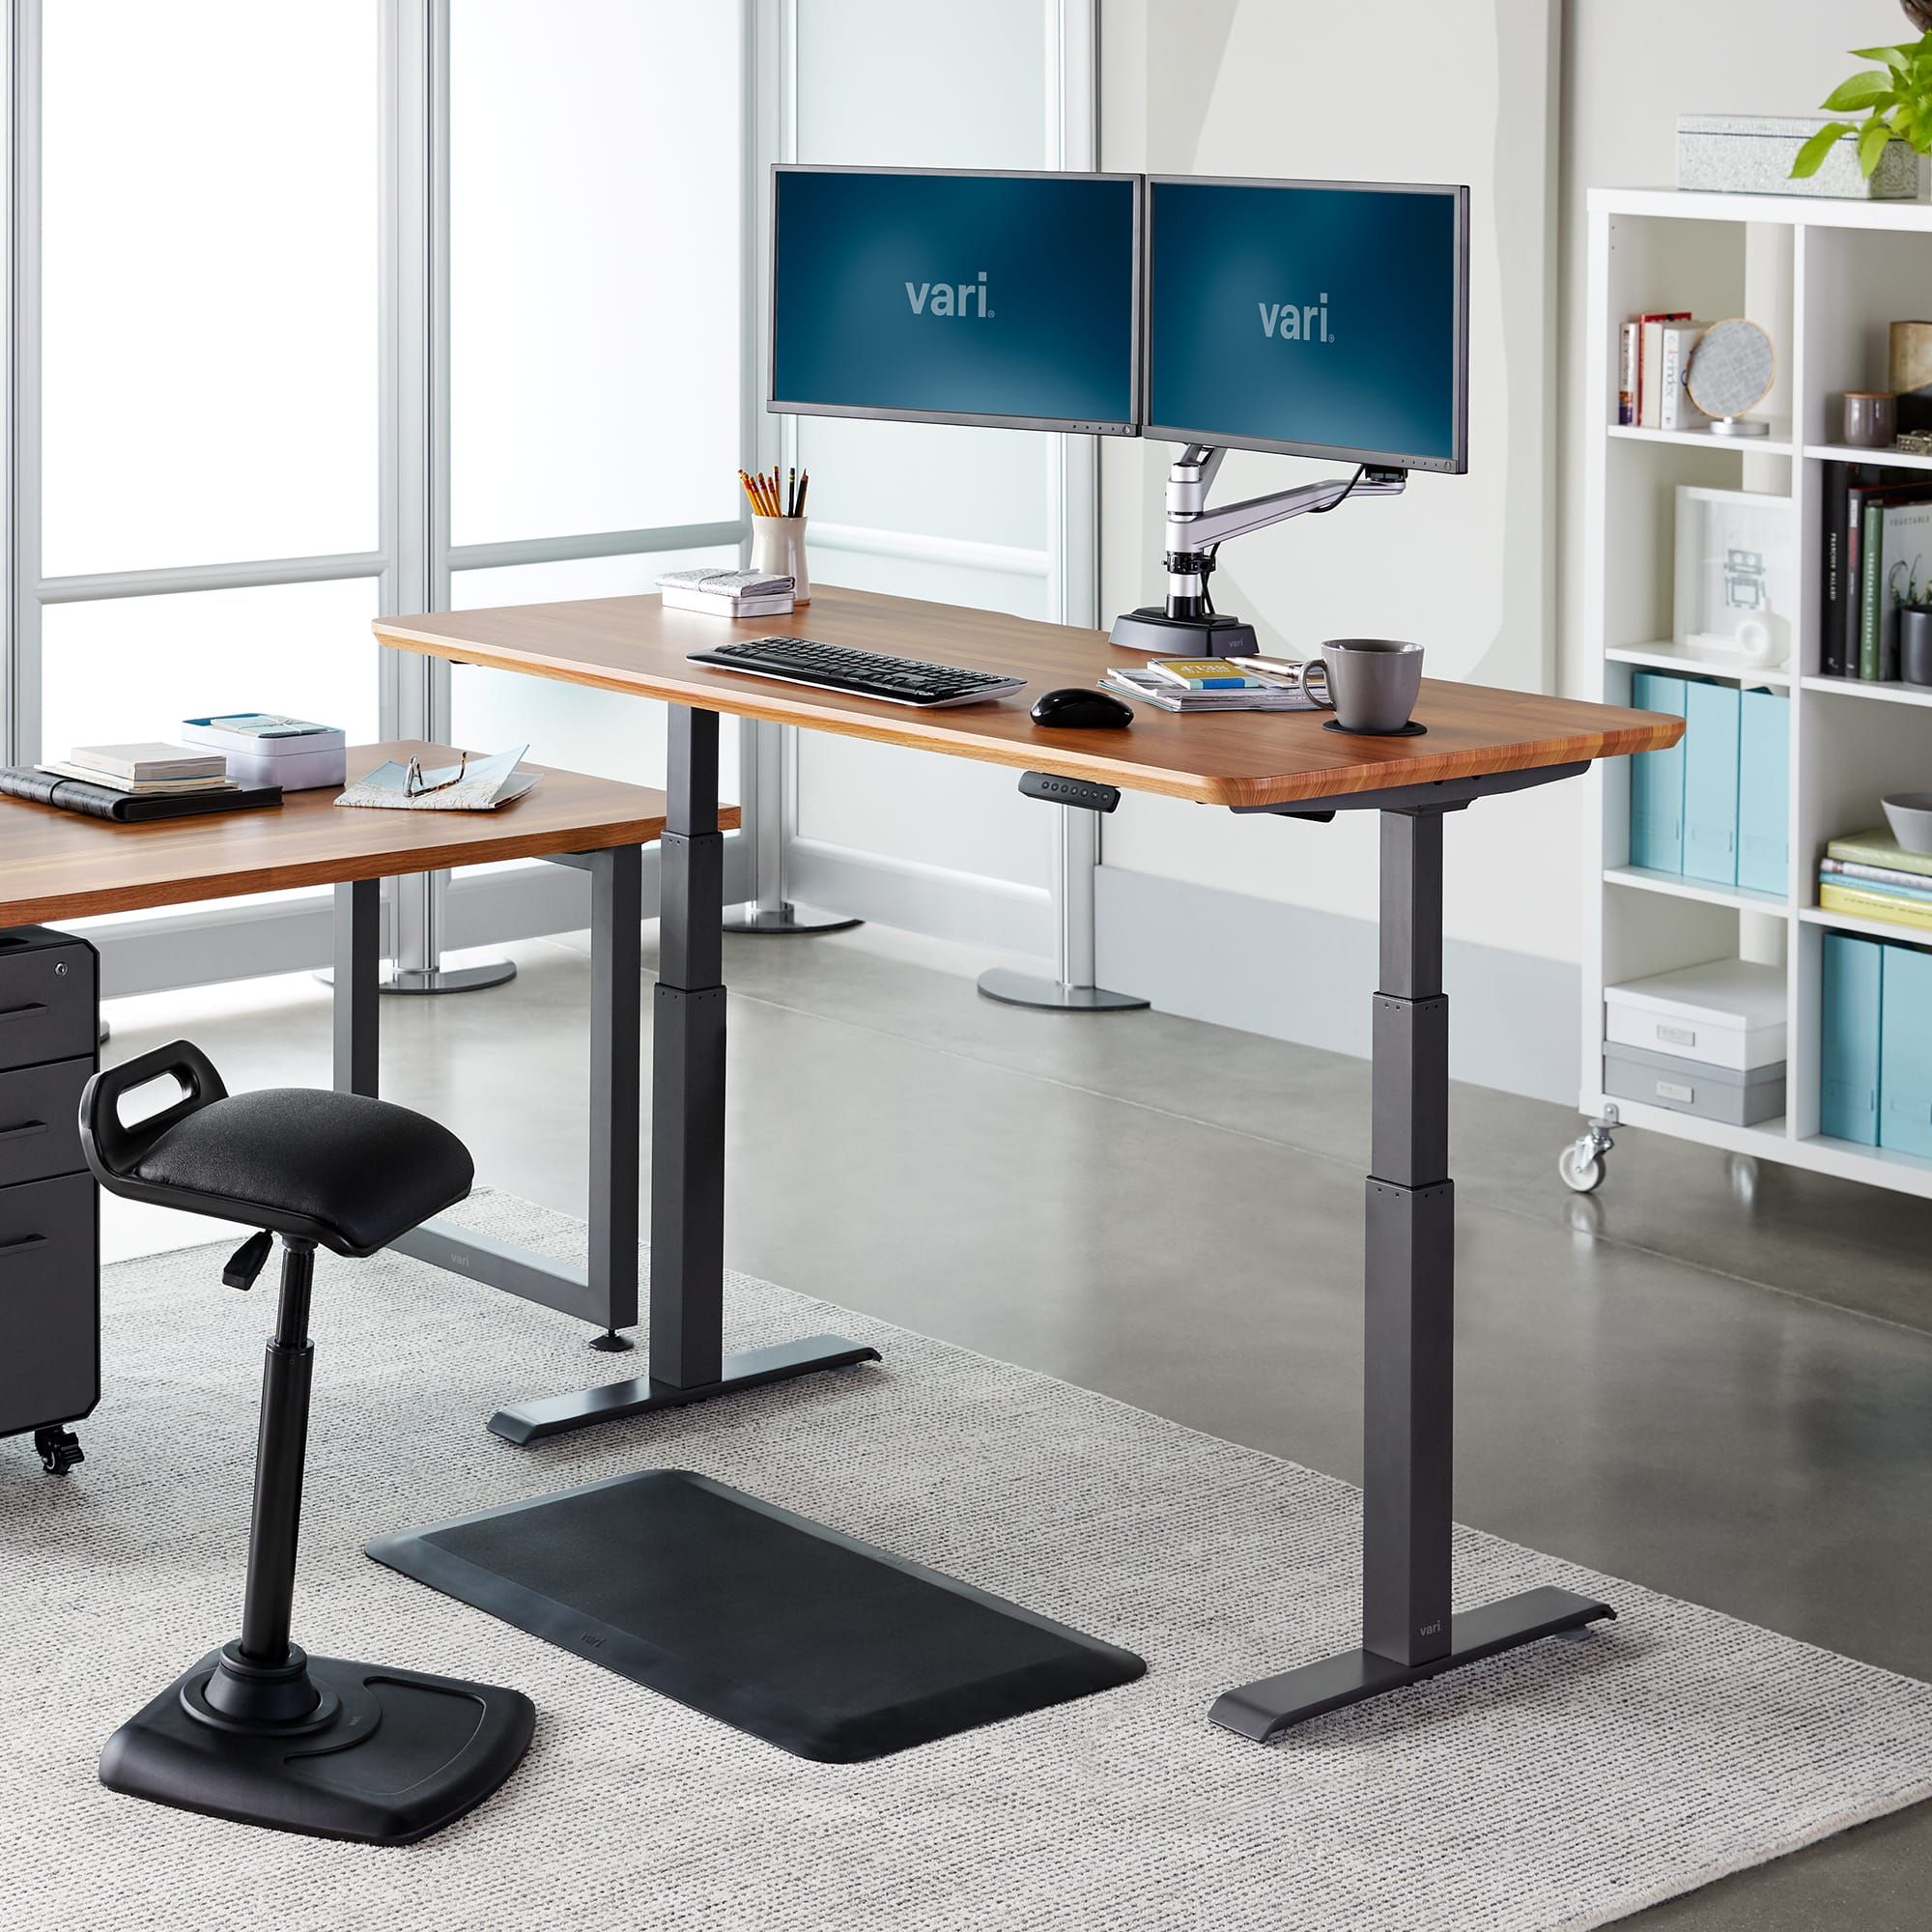 Стоячий столик. Стол ERGOSTOL Optima. Офисный стол ERGOSTOL. Стоячие столы для офиса. Стоячий стол.